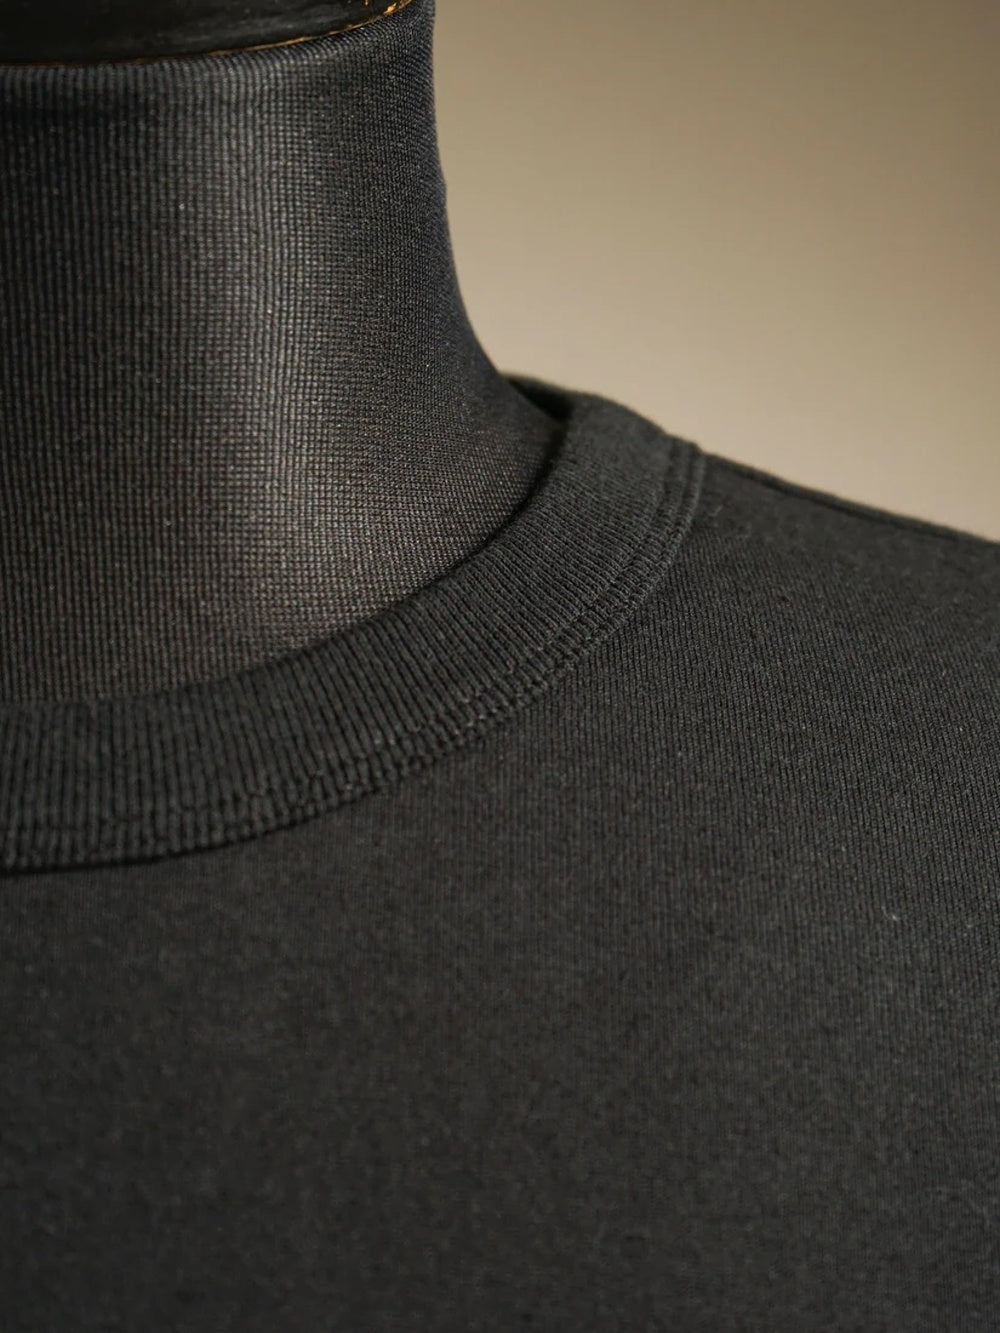 GLADHAND & Co. | HEAVY WEIGHT BINDER NECK T-SHIRTS - Black